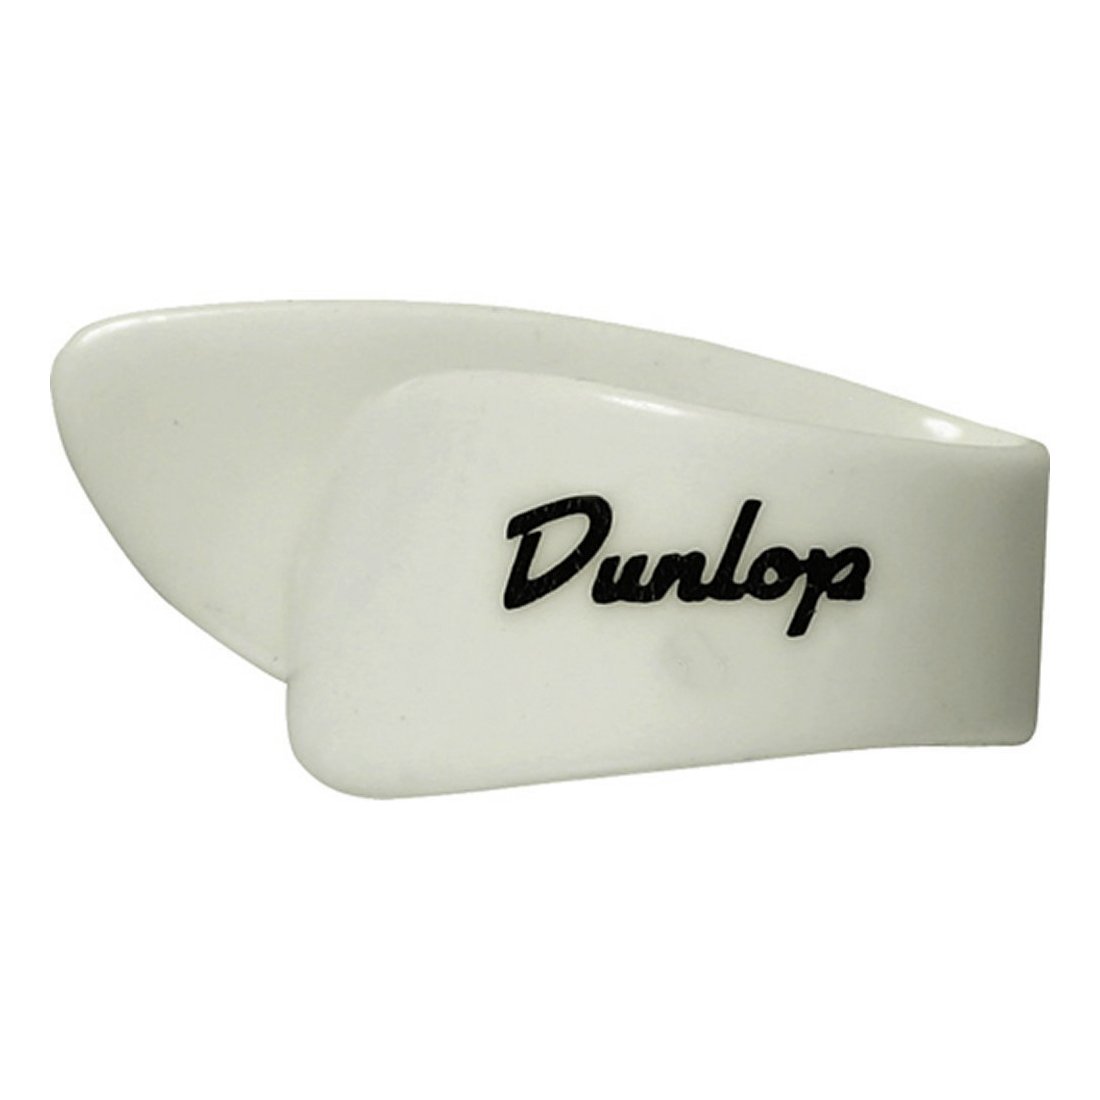 Dunlop - Onglet Blanc - 9002 M